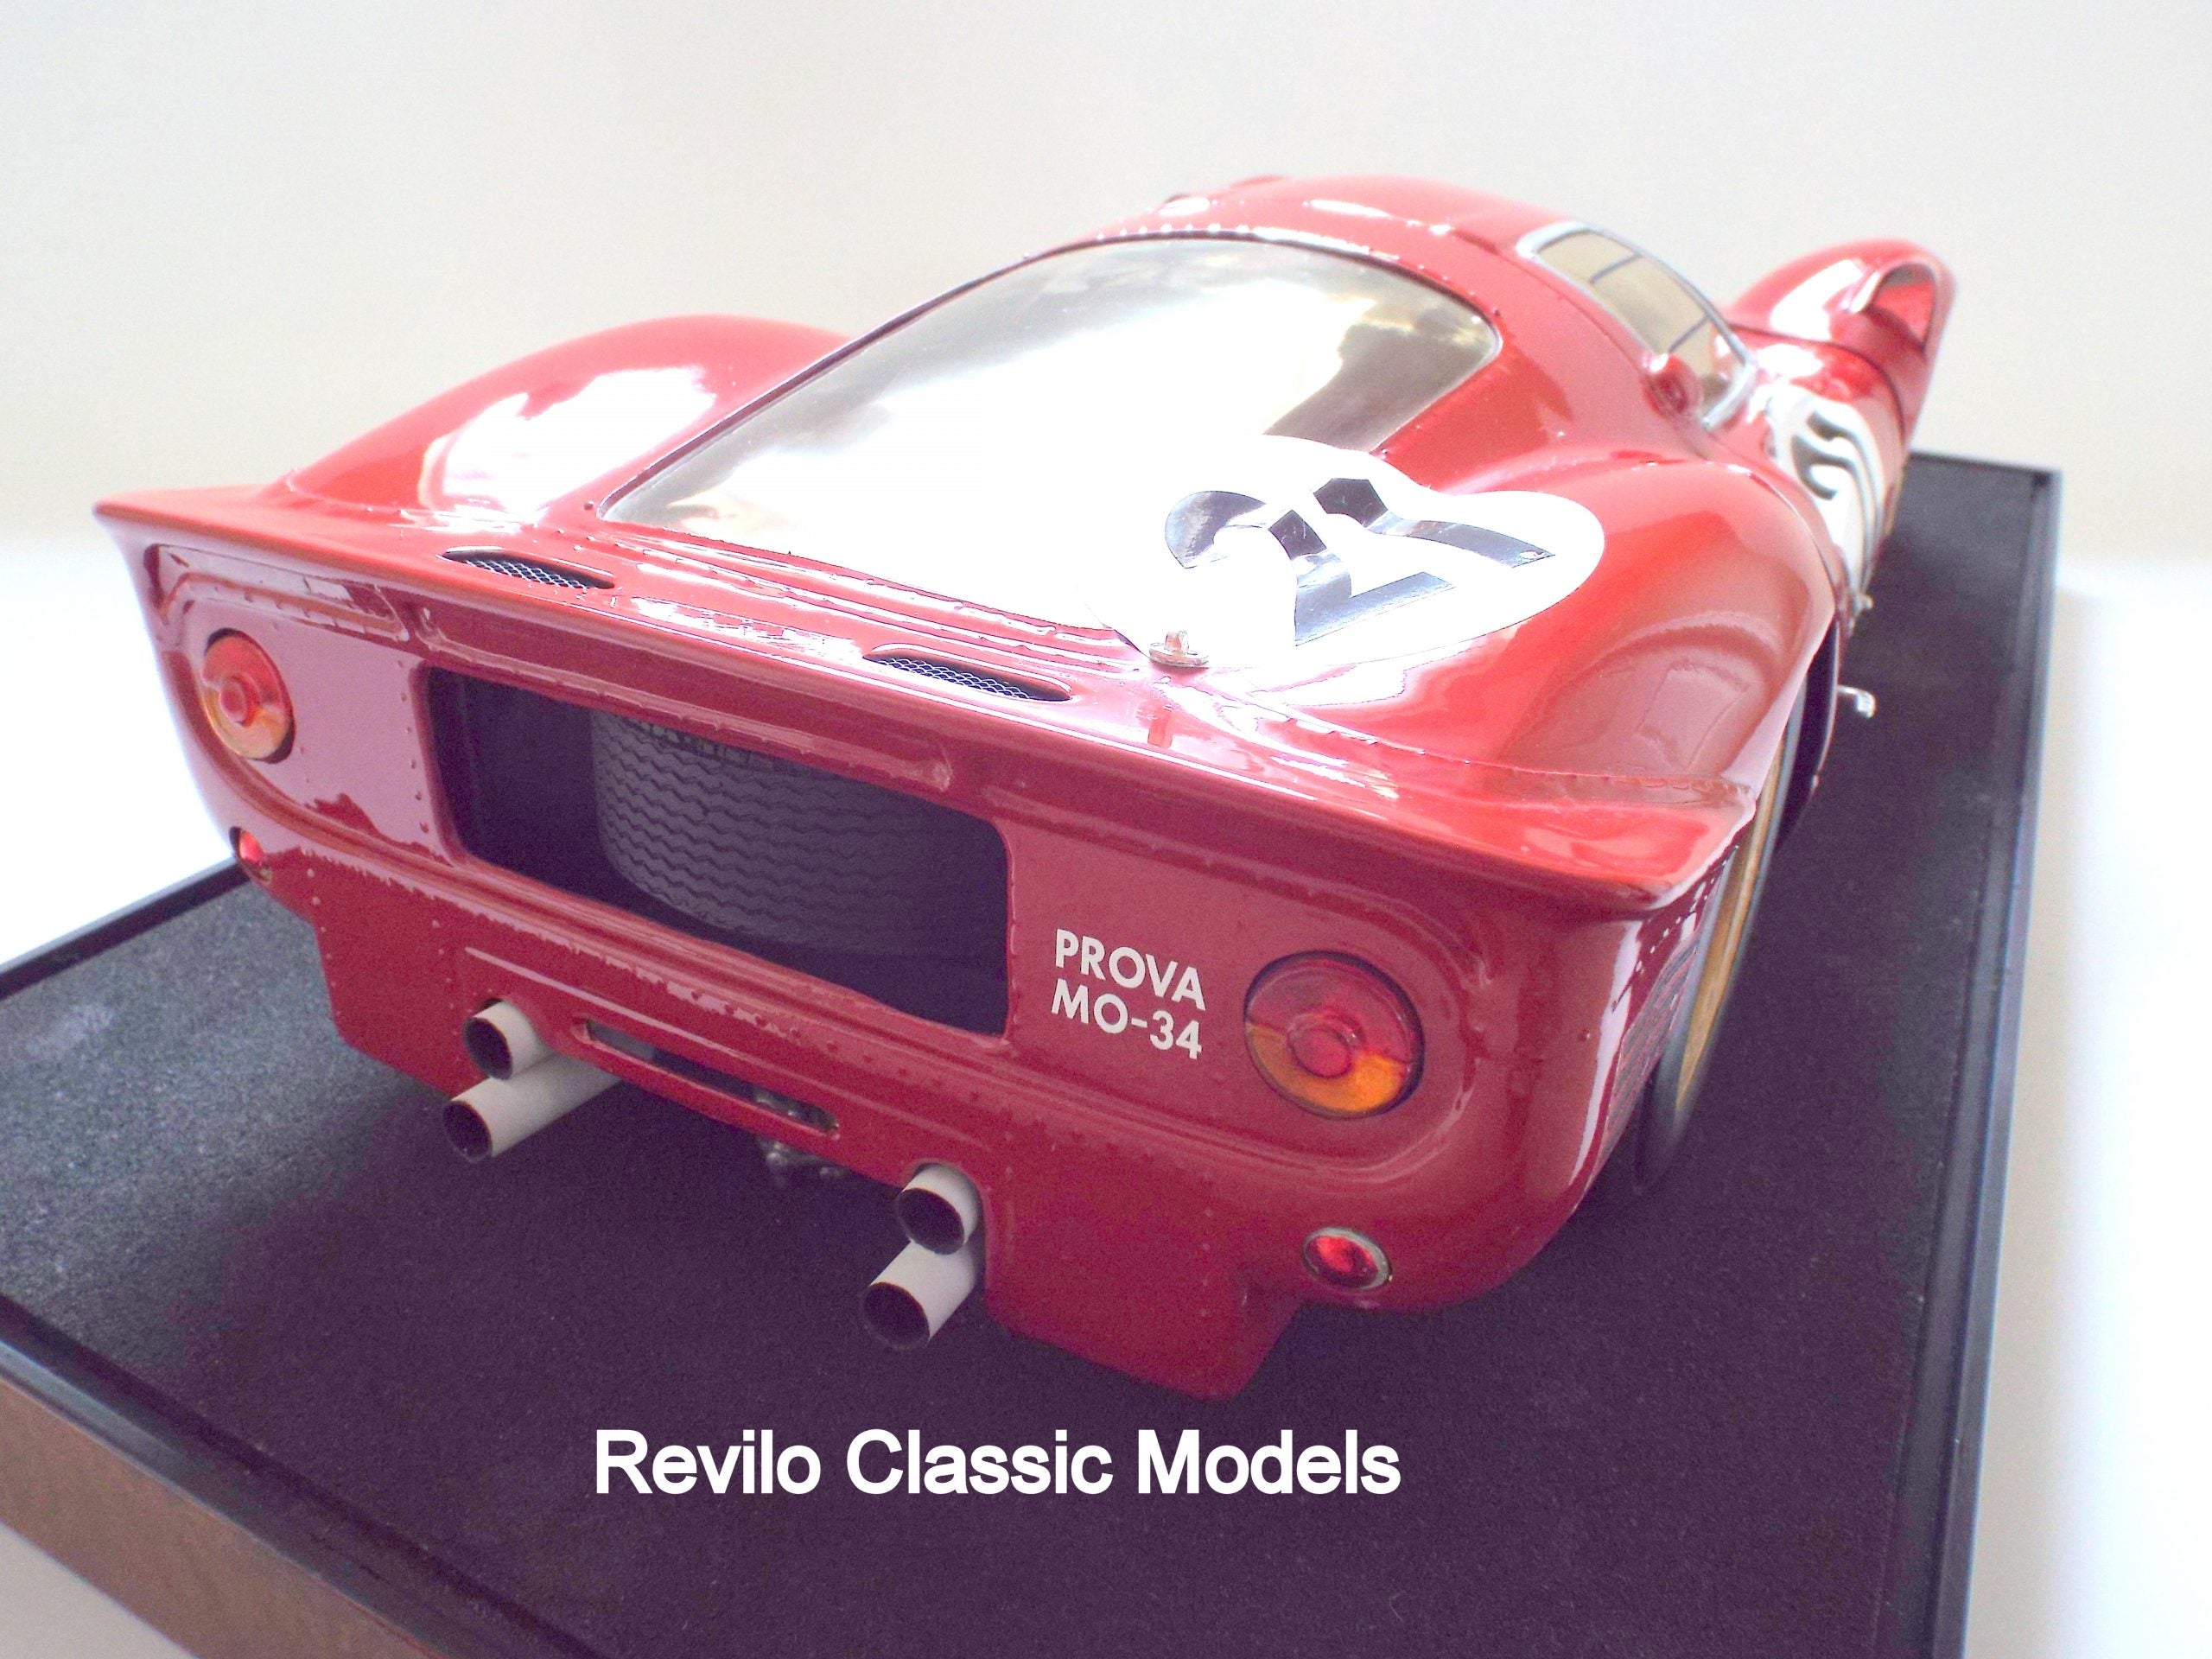 Ferrari 330 P4 1:8 scale model by Javan Smith